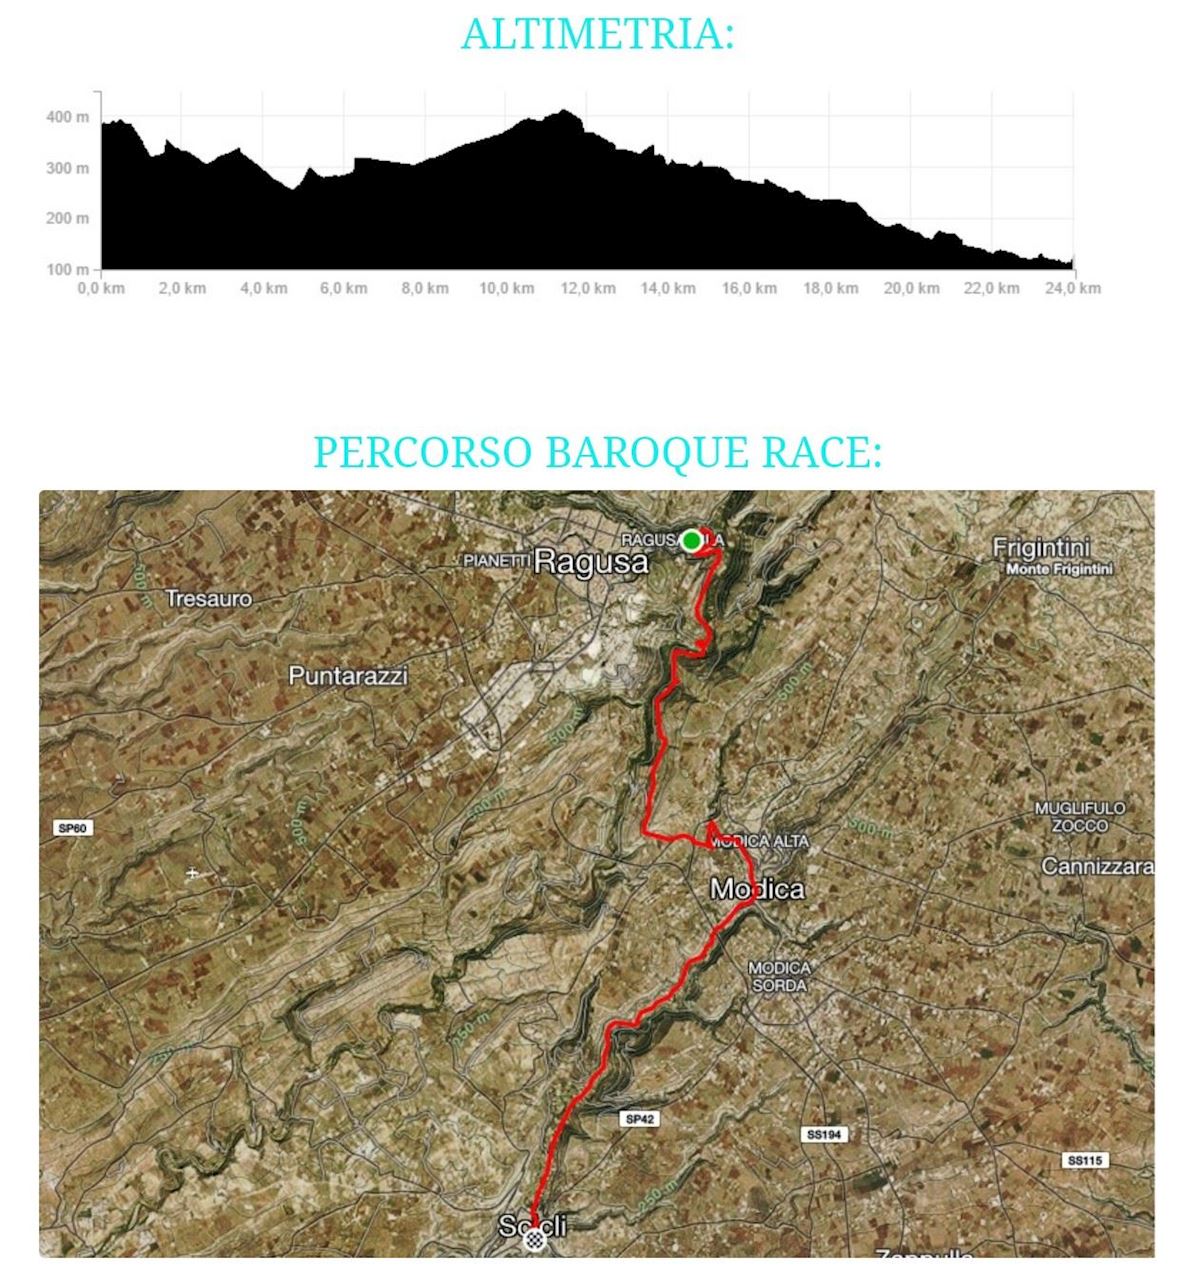 Baroque corsa Mappa del percorso